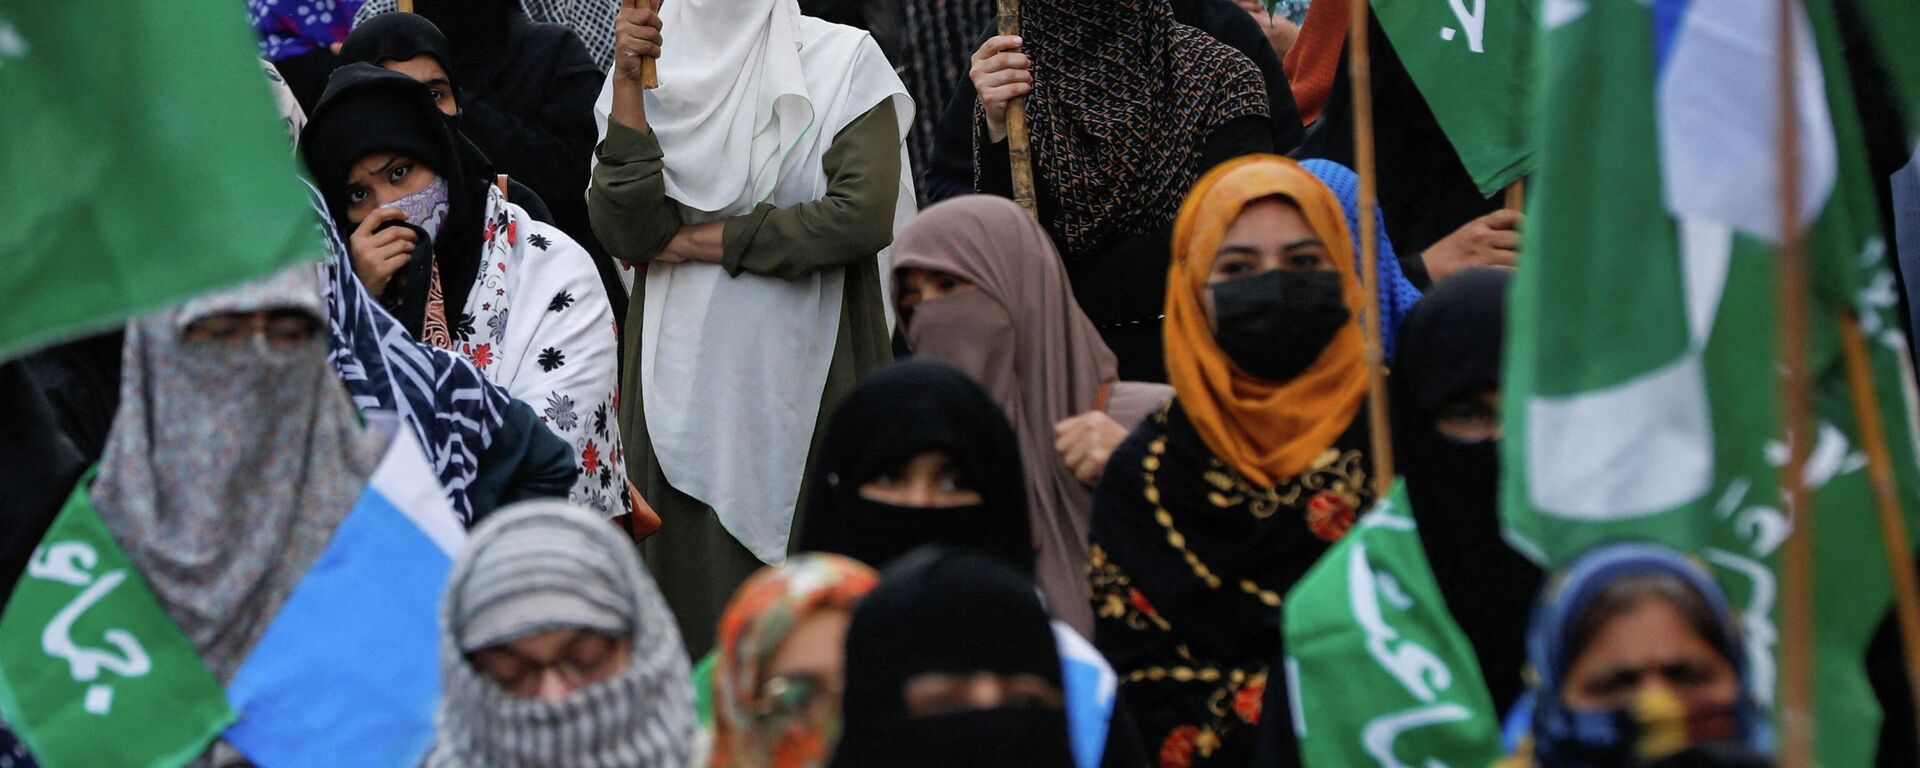 Hindistan'ın güney eyaleti Karnataka'da bazı yüksek okullarda İslamcı örtünme yasağı gerekçesiyle hicap kullanan Müslüman kız öğrencilerin derslere alınmamasına karşı Pakistan'ın Karaçi kentinde düzenlenen bir protesto - Sputnik Türkiye, 1920, 12.02.2022